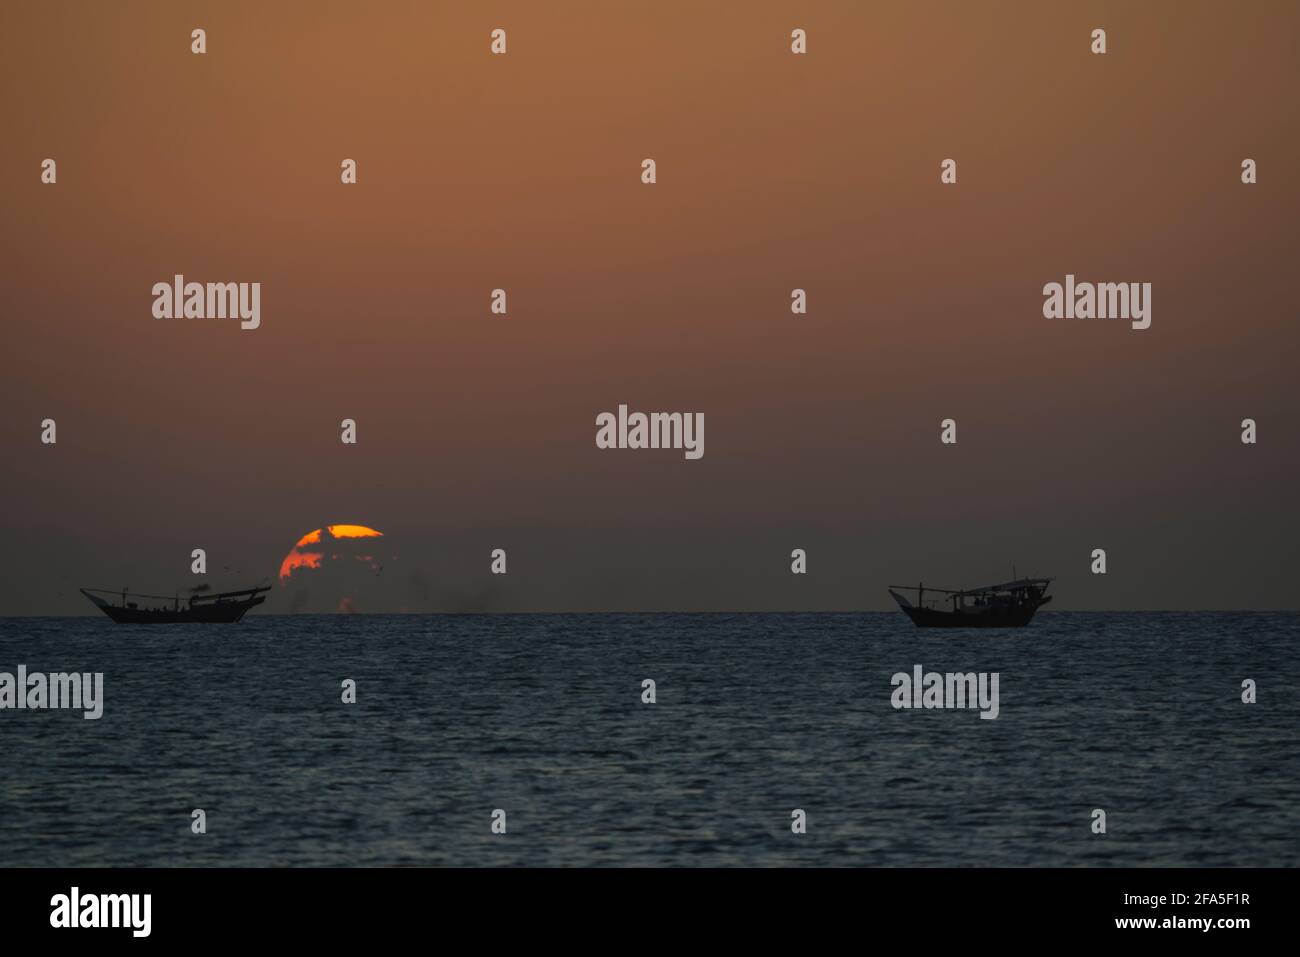 Sonnenuntergang am Arabischen Meer mit Daus, die auf dem Wasser schwimmen, von der Südspitze der Insel Masirah, Oman aus gesehen Stockfoto